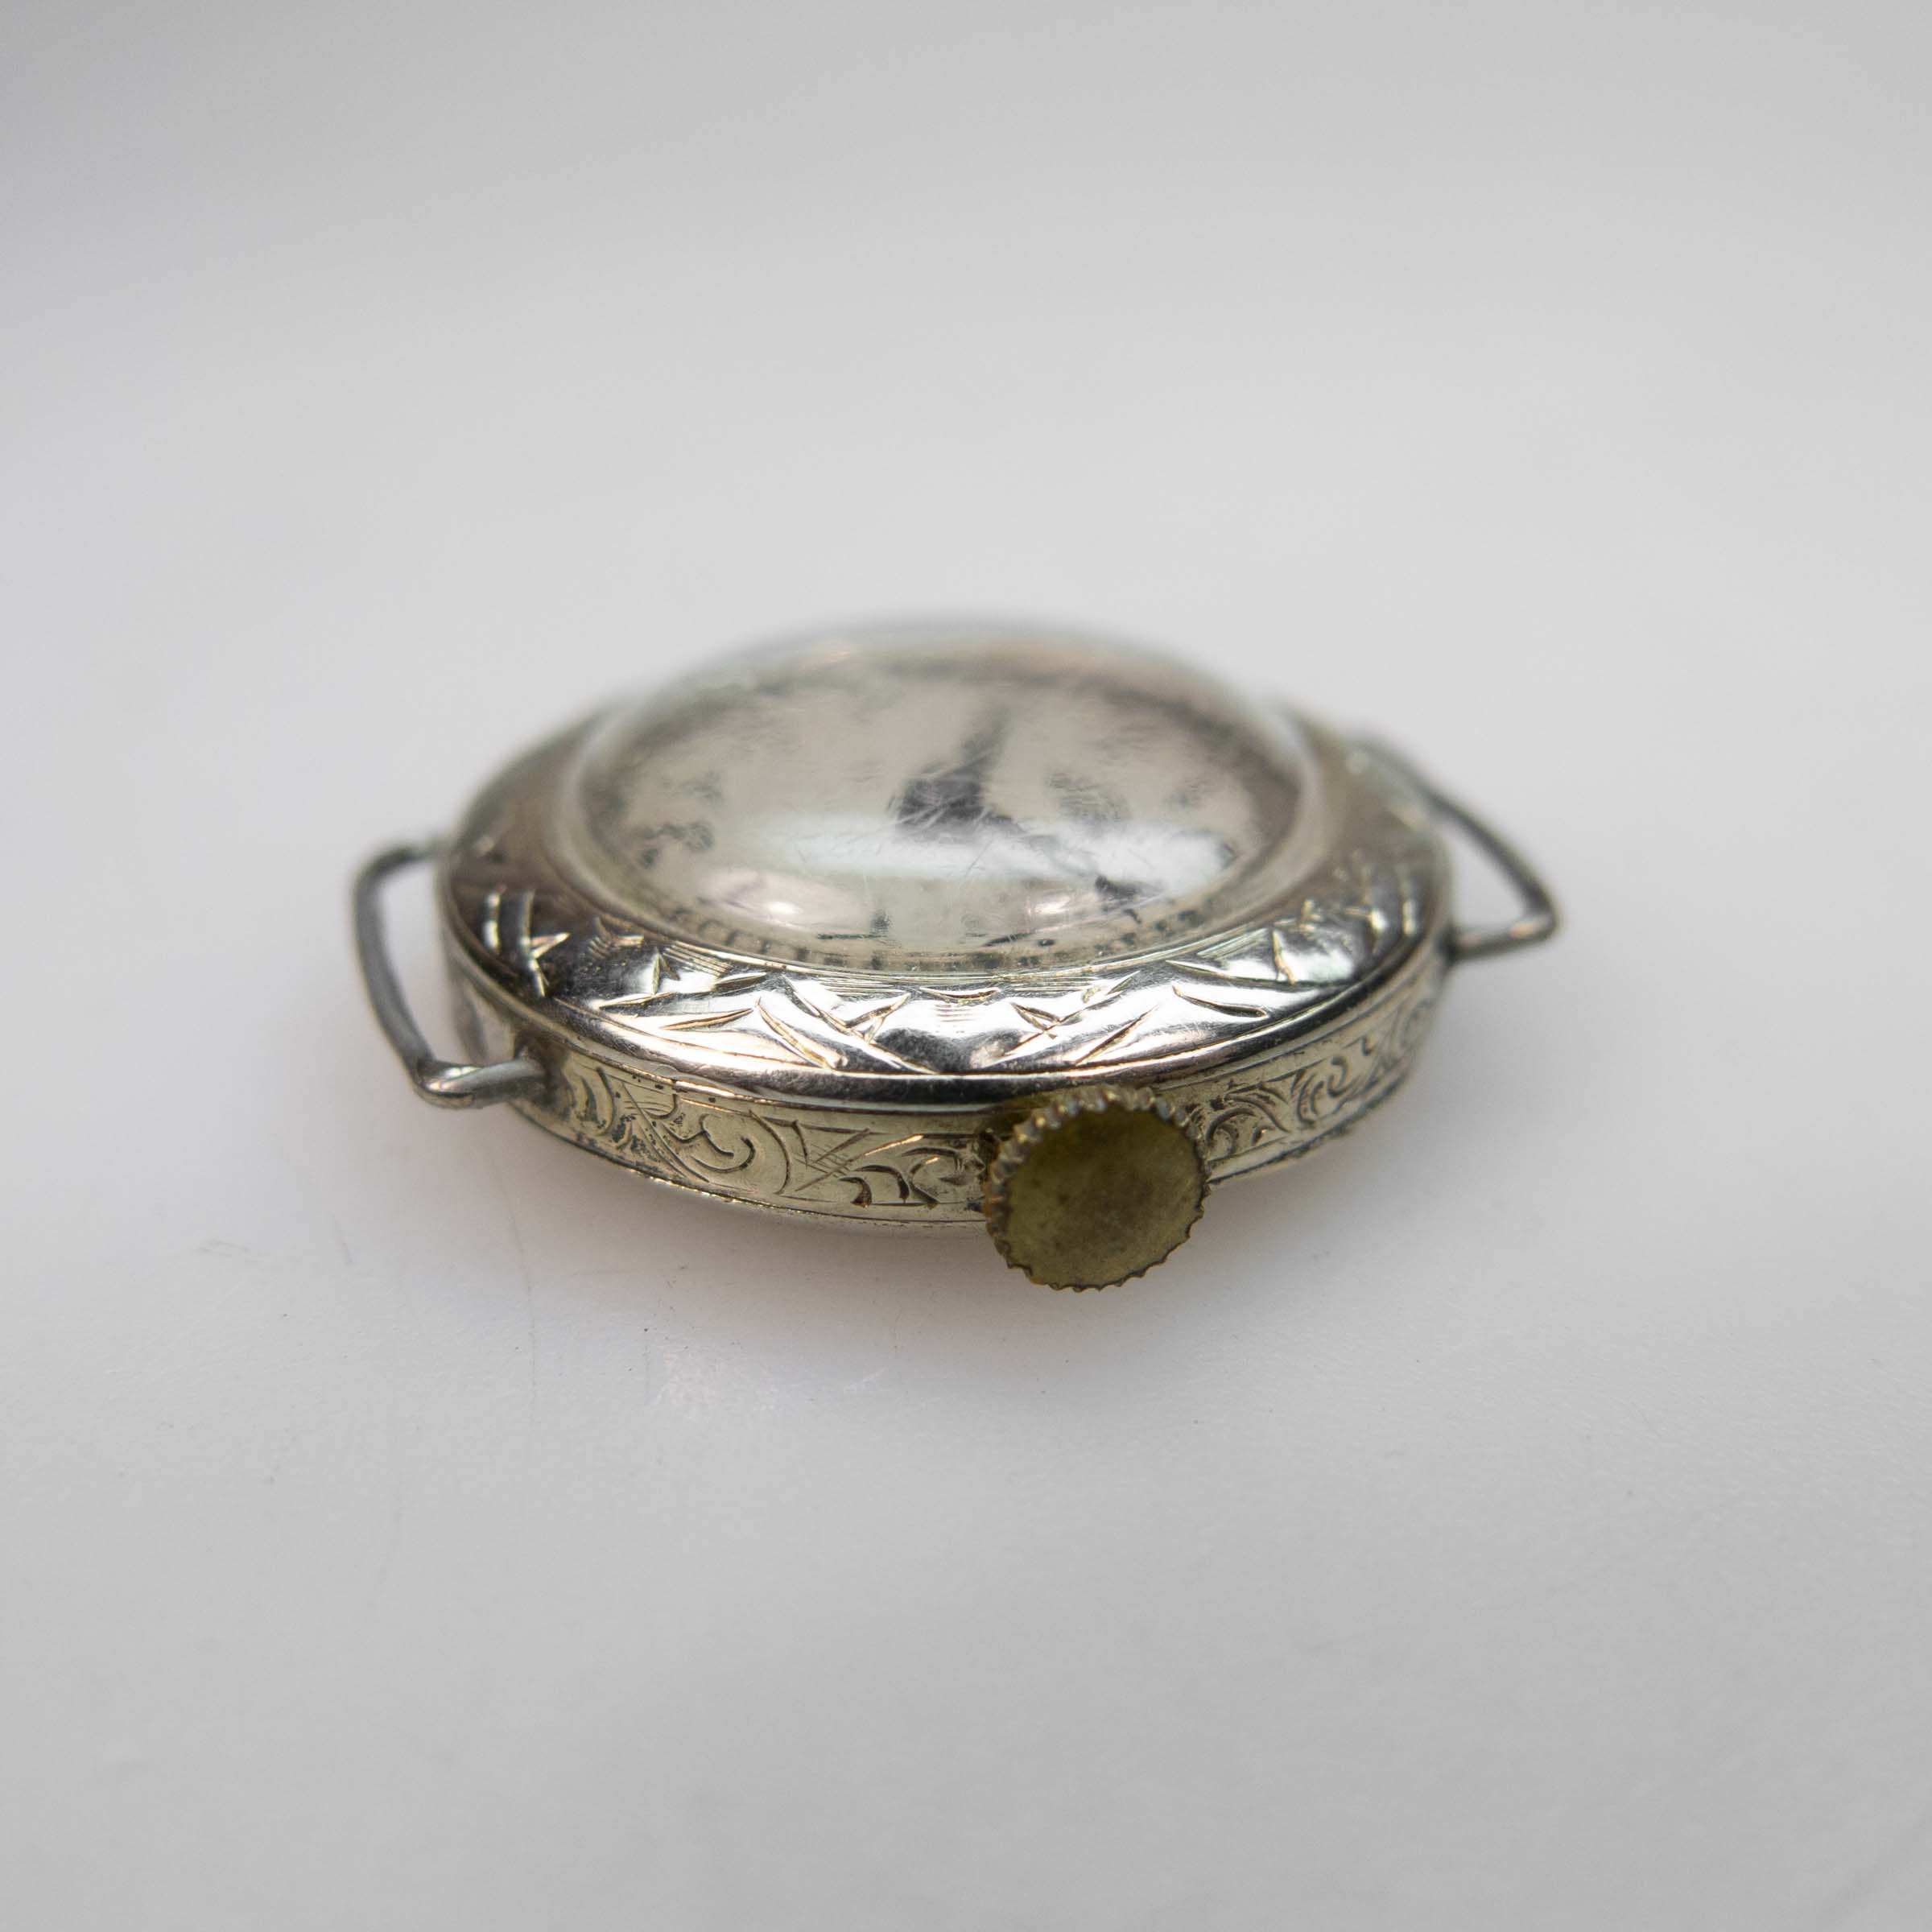 Lady's Rolex 1/4 Century Club Wristwatch